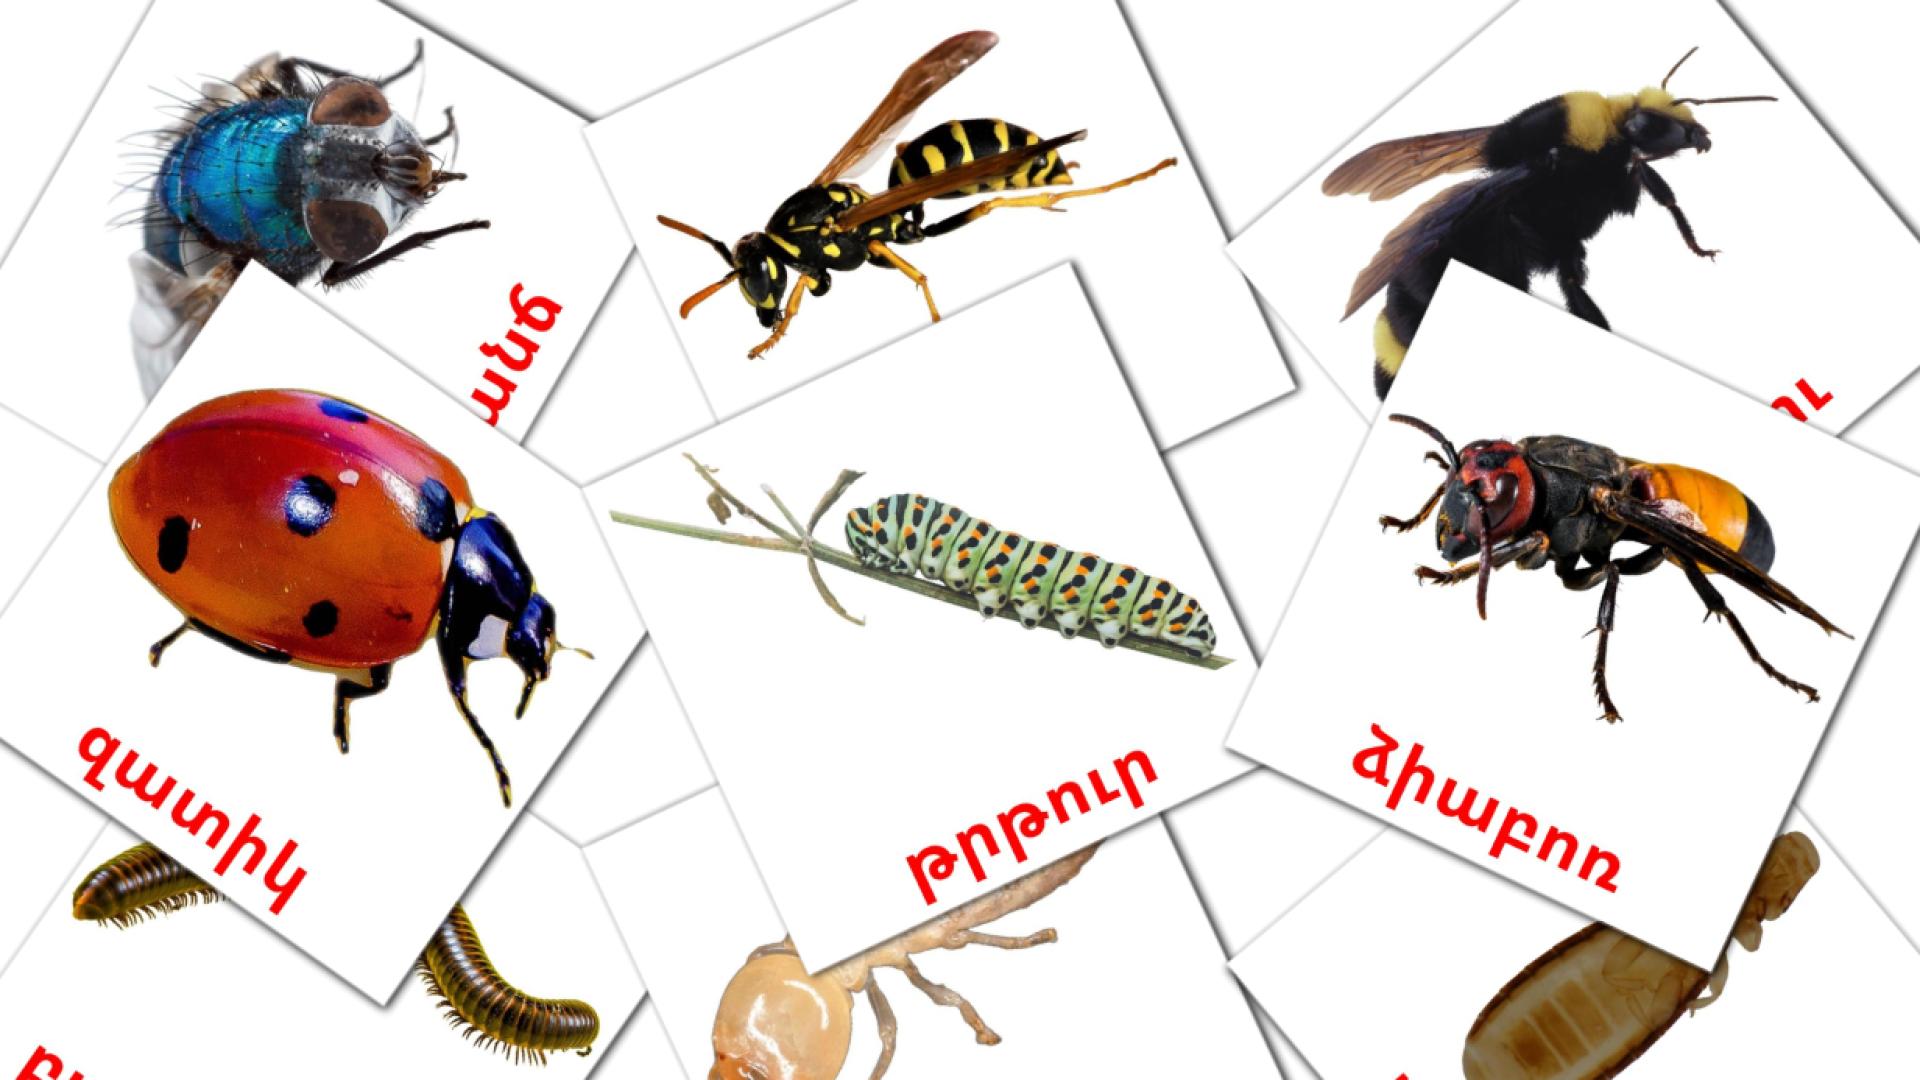 Insectos - tarjetas de vocabulario en armenio